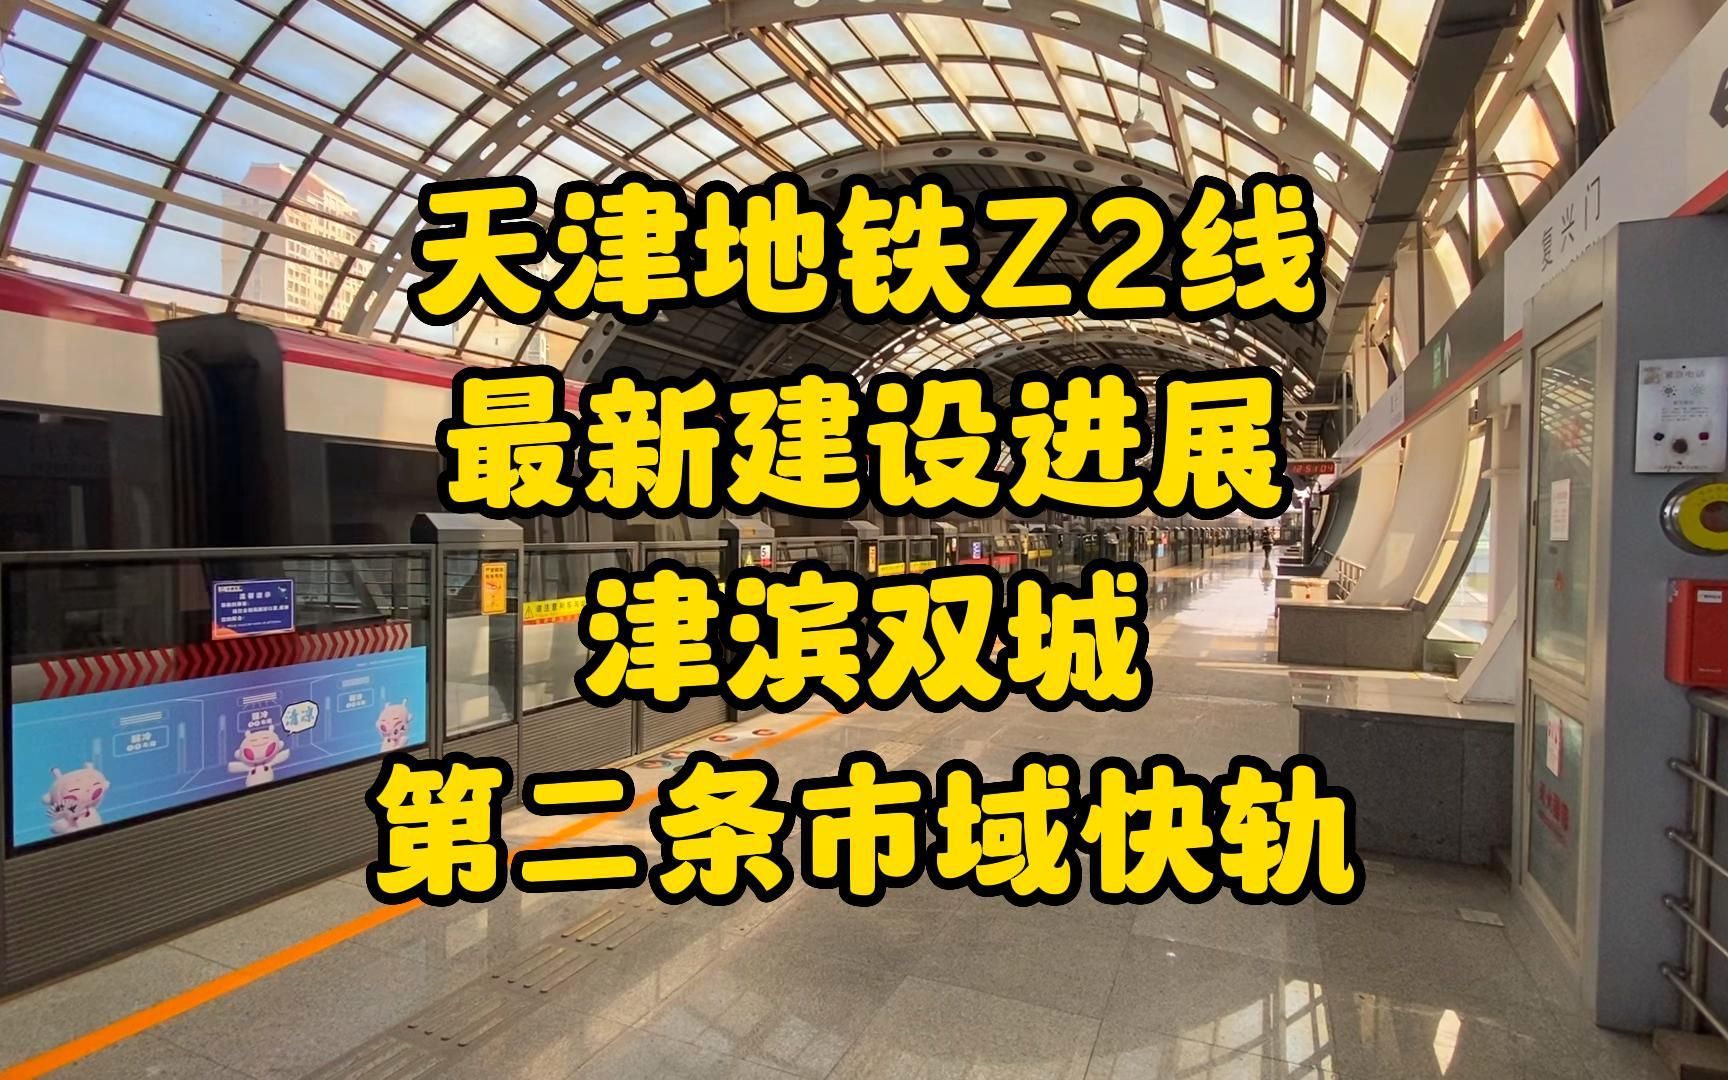 天津z2线开工仪式图片